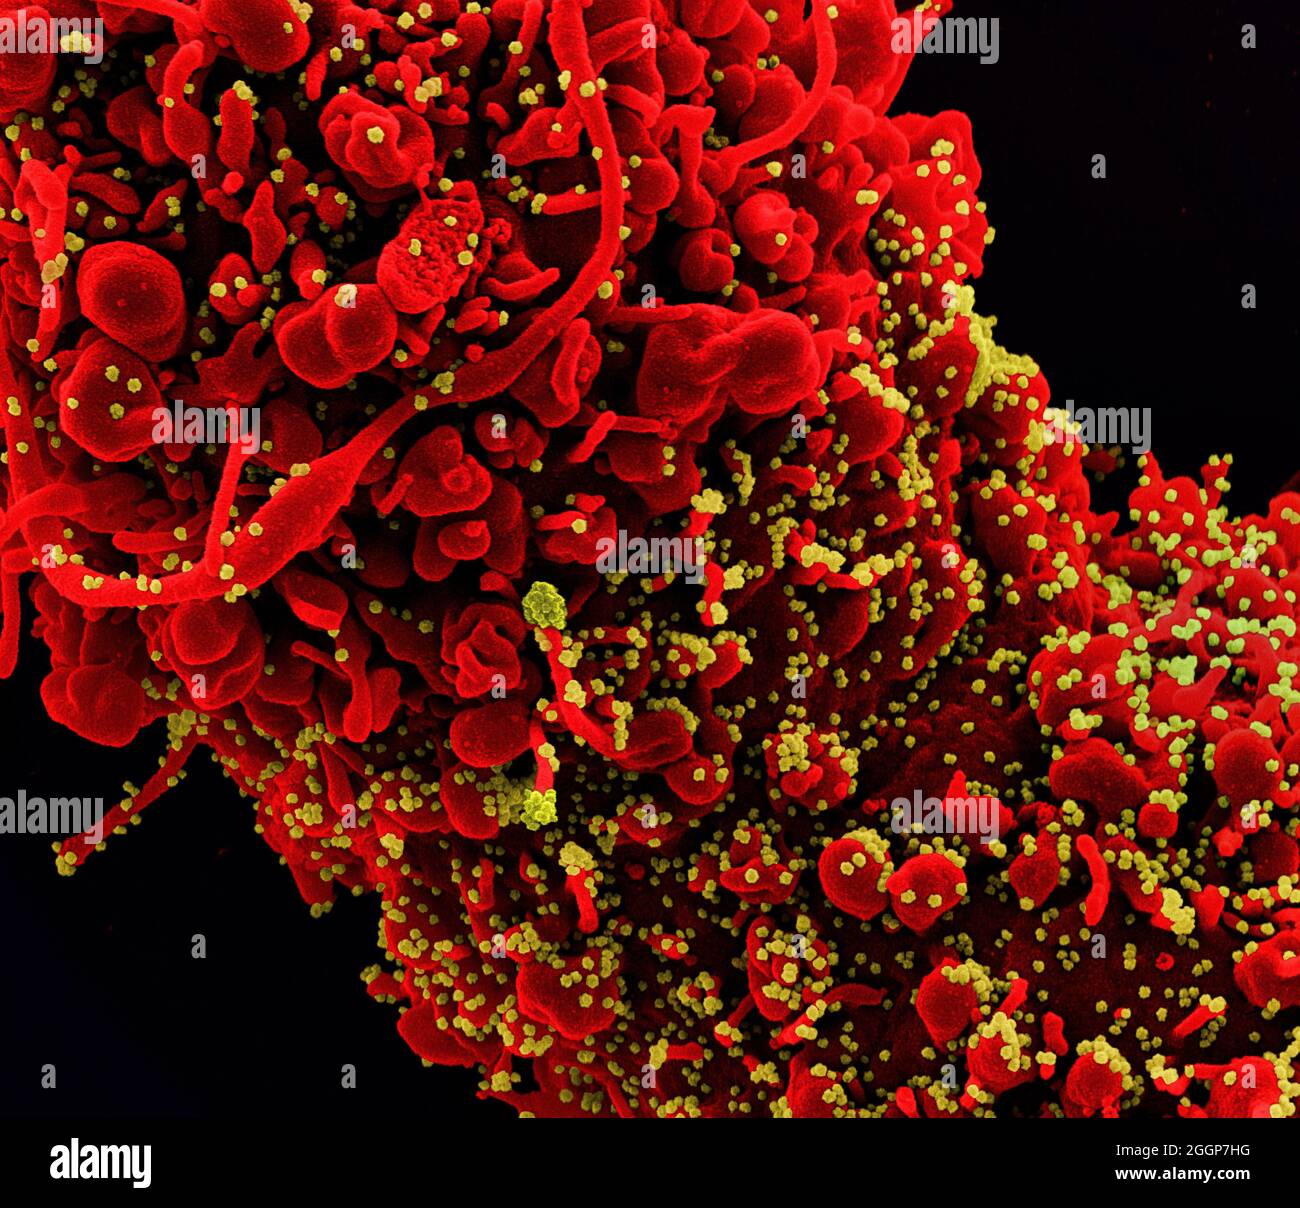 Micrografia elettronica a scansione colorata di una cellula (rossa) che mostra segni morfologici di apoptosi, infettata con particelle del virus SARS-COV-2 (gialla), isolata da un campione di paziente. Foto Stock